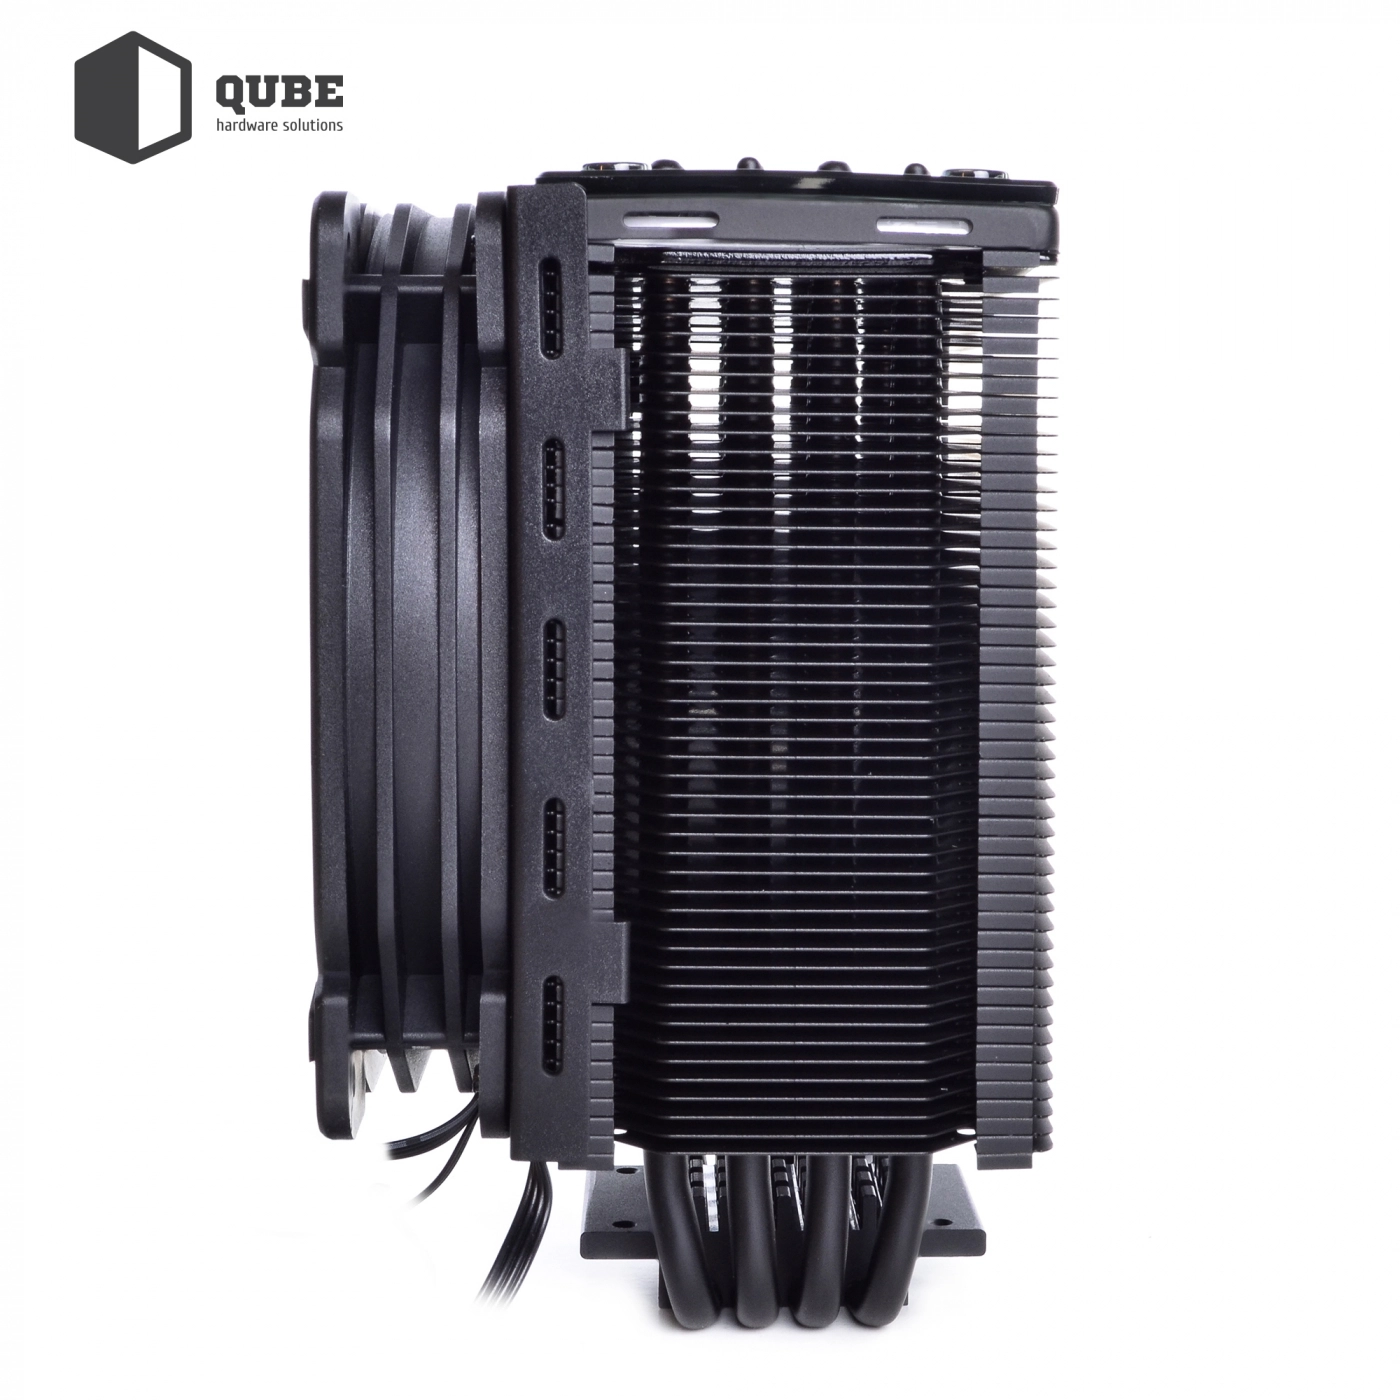 Купить Процессорный кулер QUBE QB-OL201 (120mm/4pin/800-1500RPM/30.8dBA/мак. TDP 135W/4 тепл. трубки) - фото 9